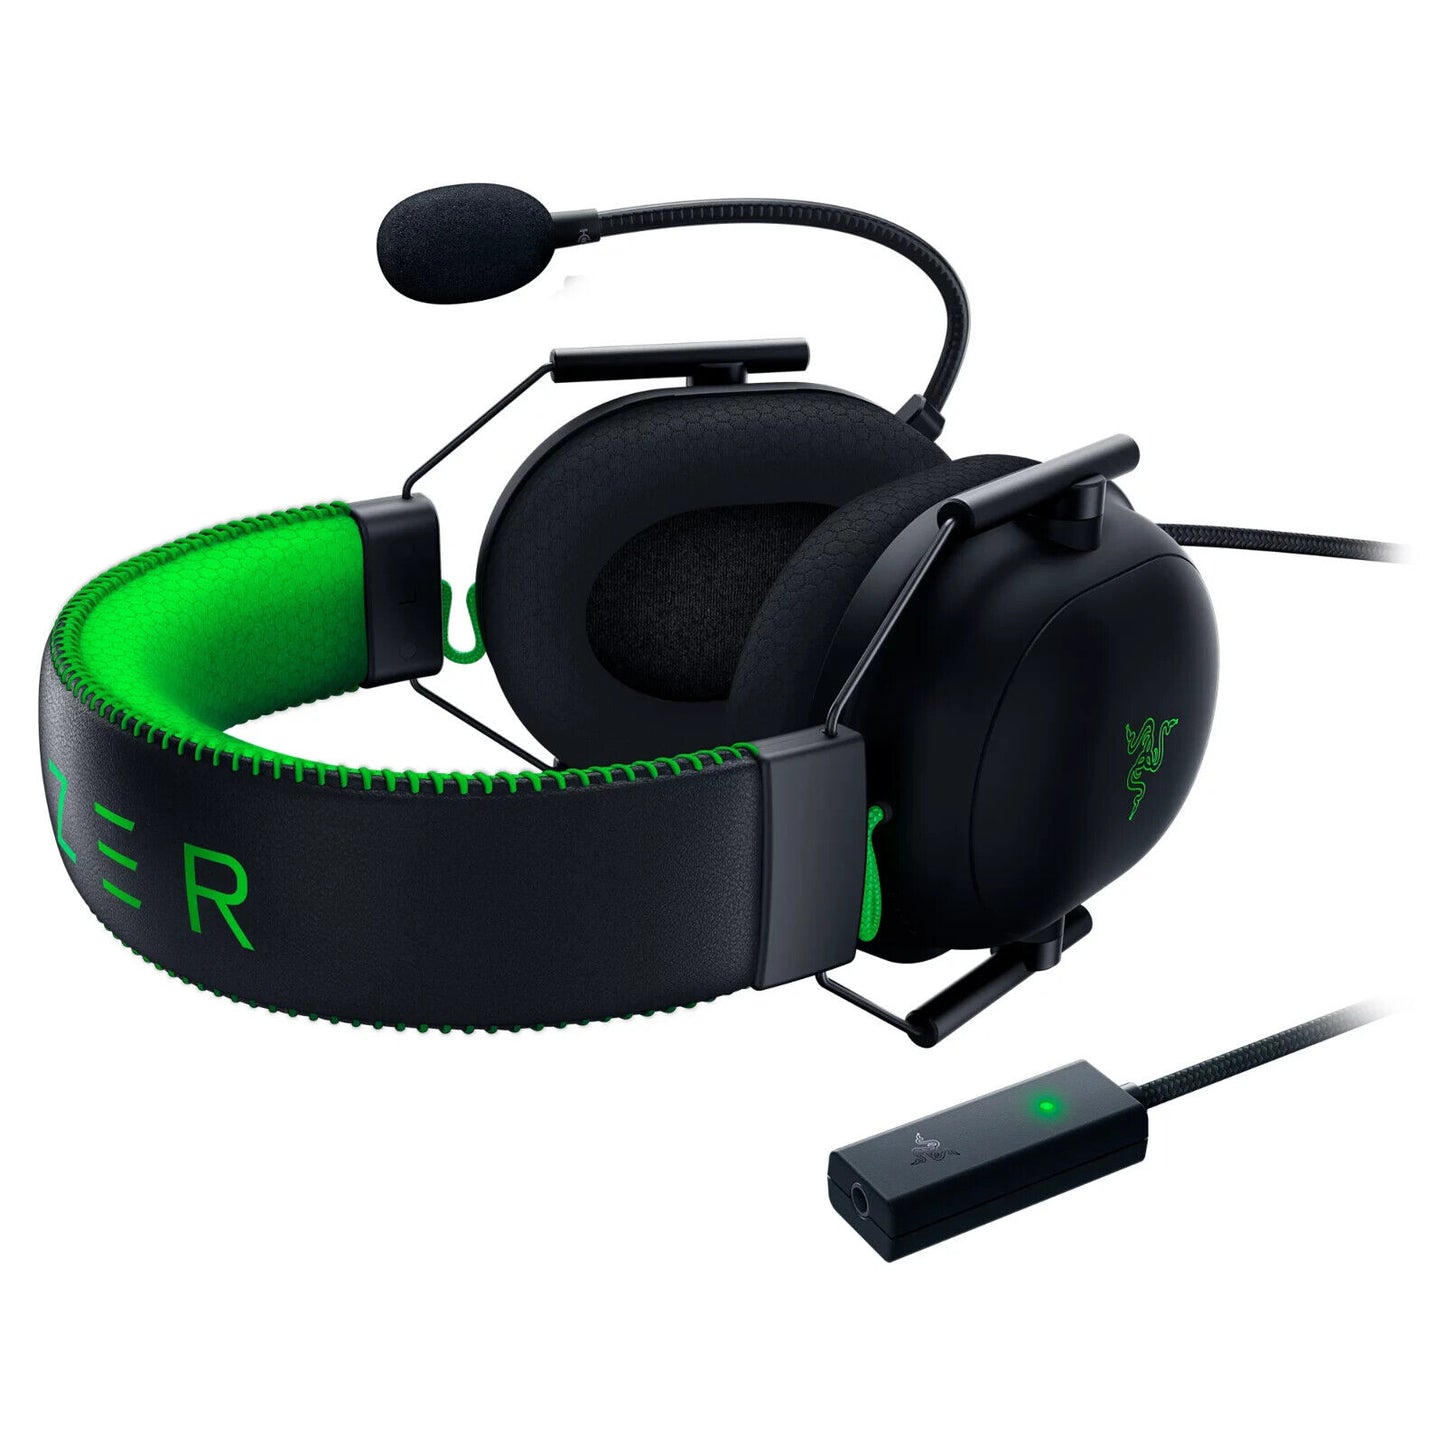 Razer BlackShark v2 Special Edition Wired Gaming Headset w/ THX - Ricky's Garage